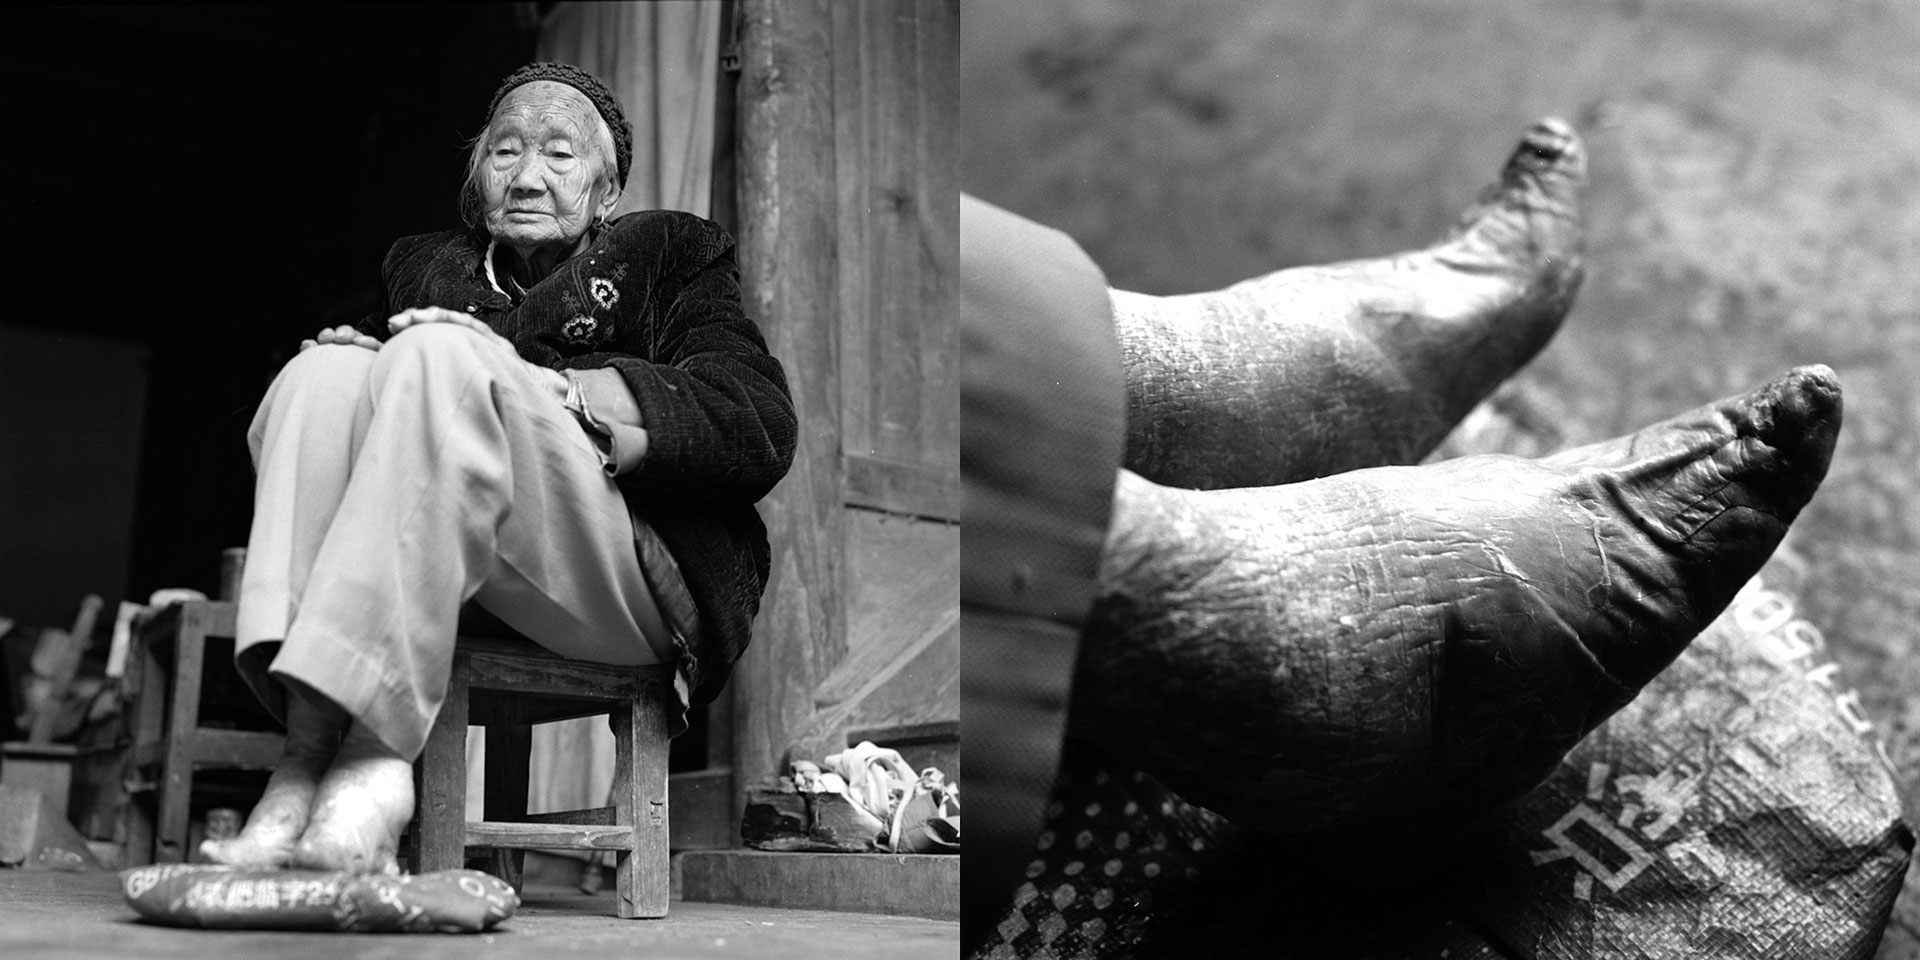 سنت بستن پاهای زنان در چین